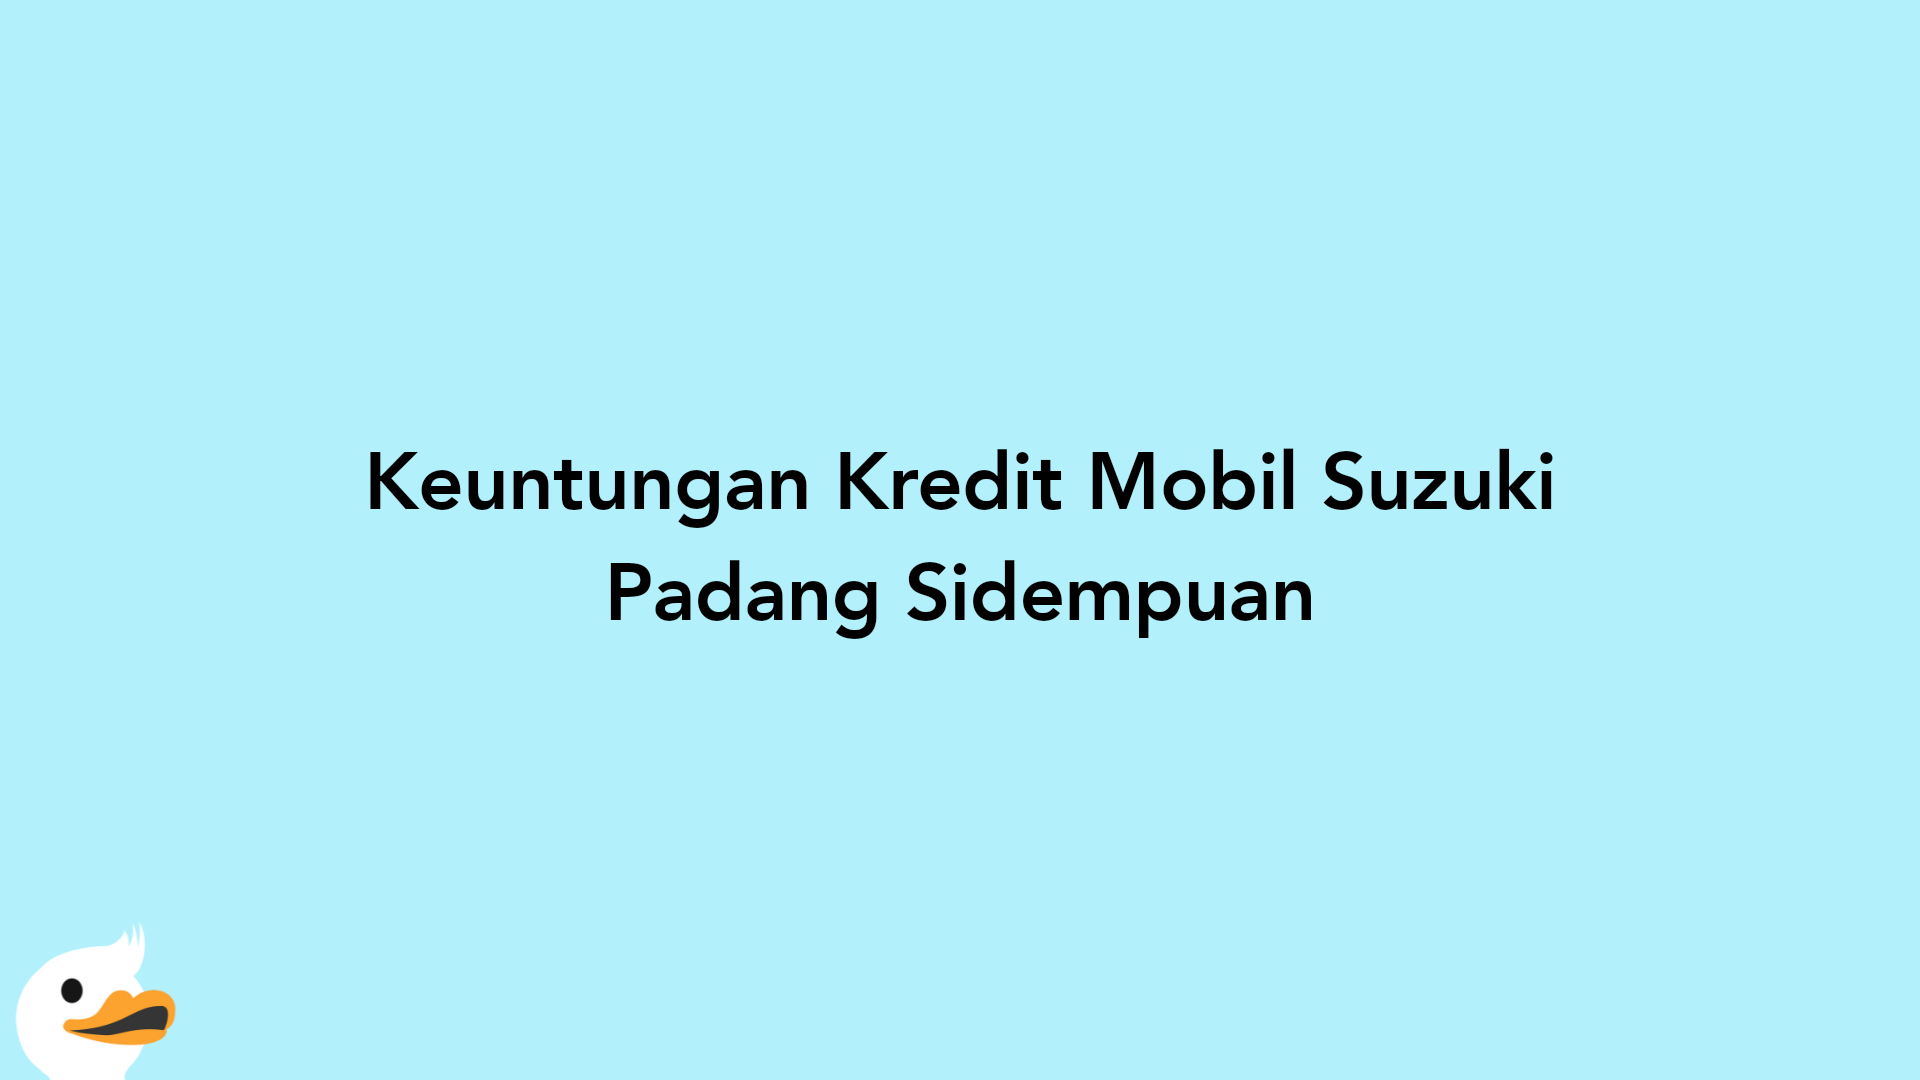 Keuntungan Kredit Mobil Suzuki Padang Sidempuan